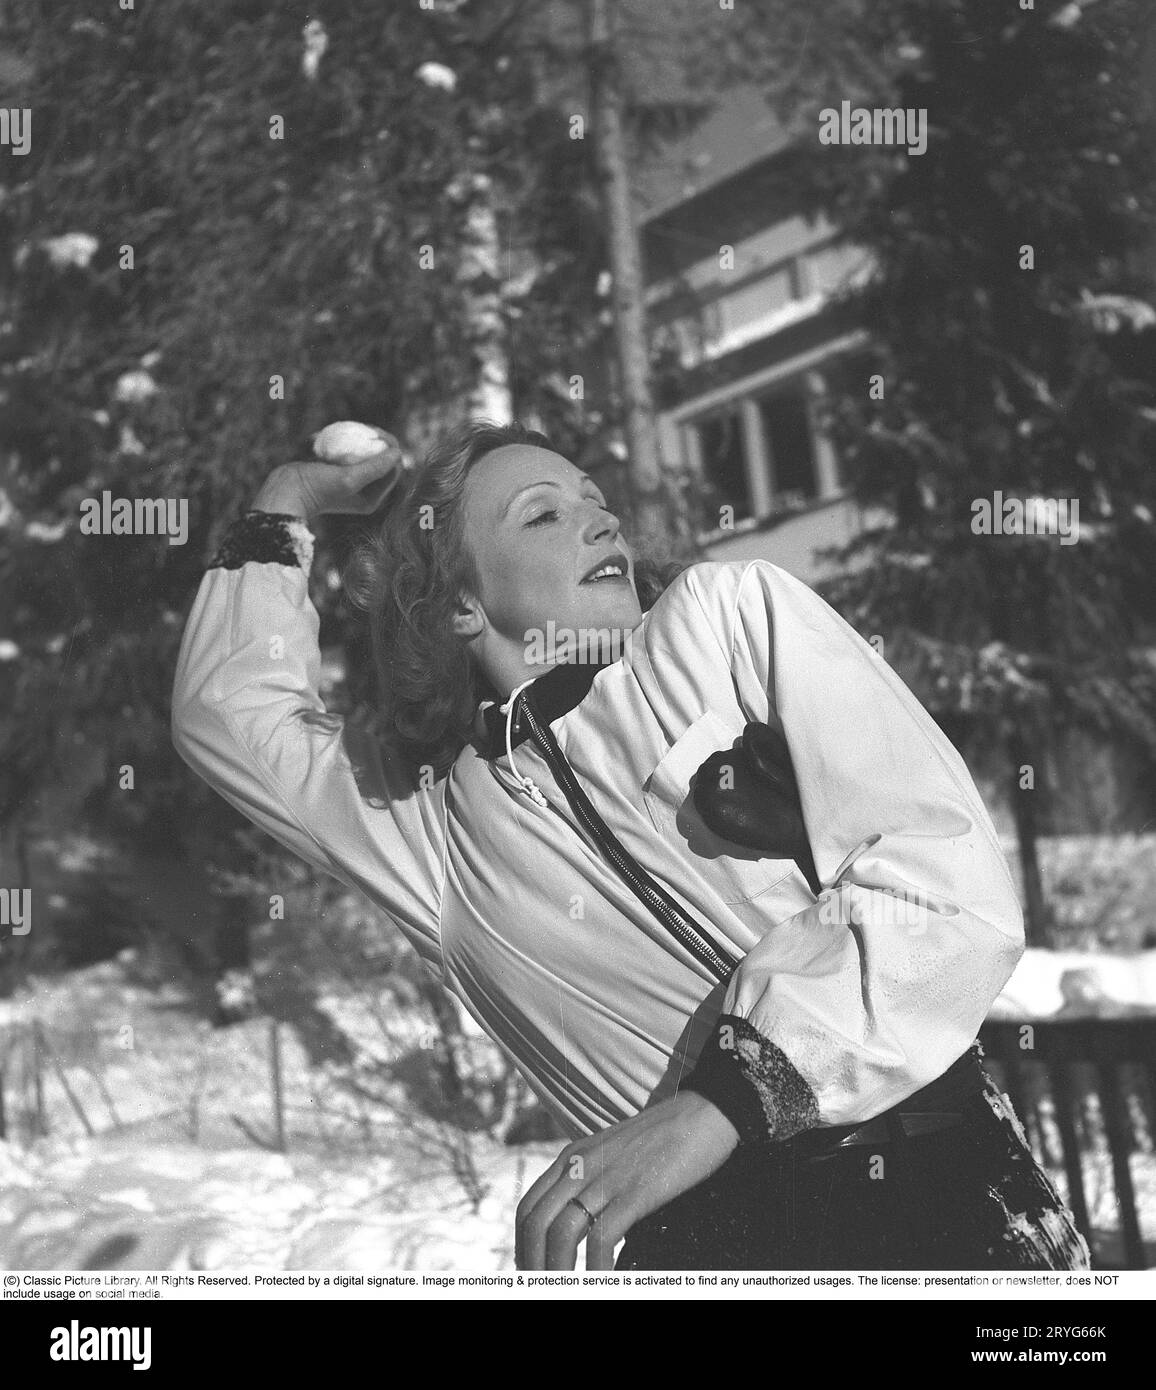 Inga Tidblad, 1901–1975, schwedische Schauspielerin. Sie trägt typische Skikleidung aus den 40er Jahren, wenn sie einen Schneeball auf etwas oder jemanden wirft... Schweden 1942. Kristoffersson, Ref. 229-2 Stockfoto